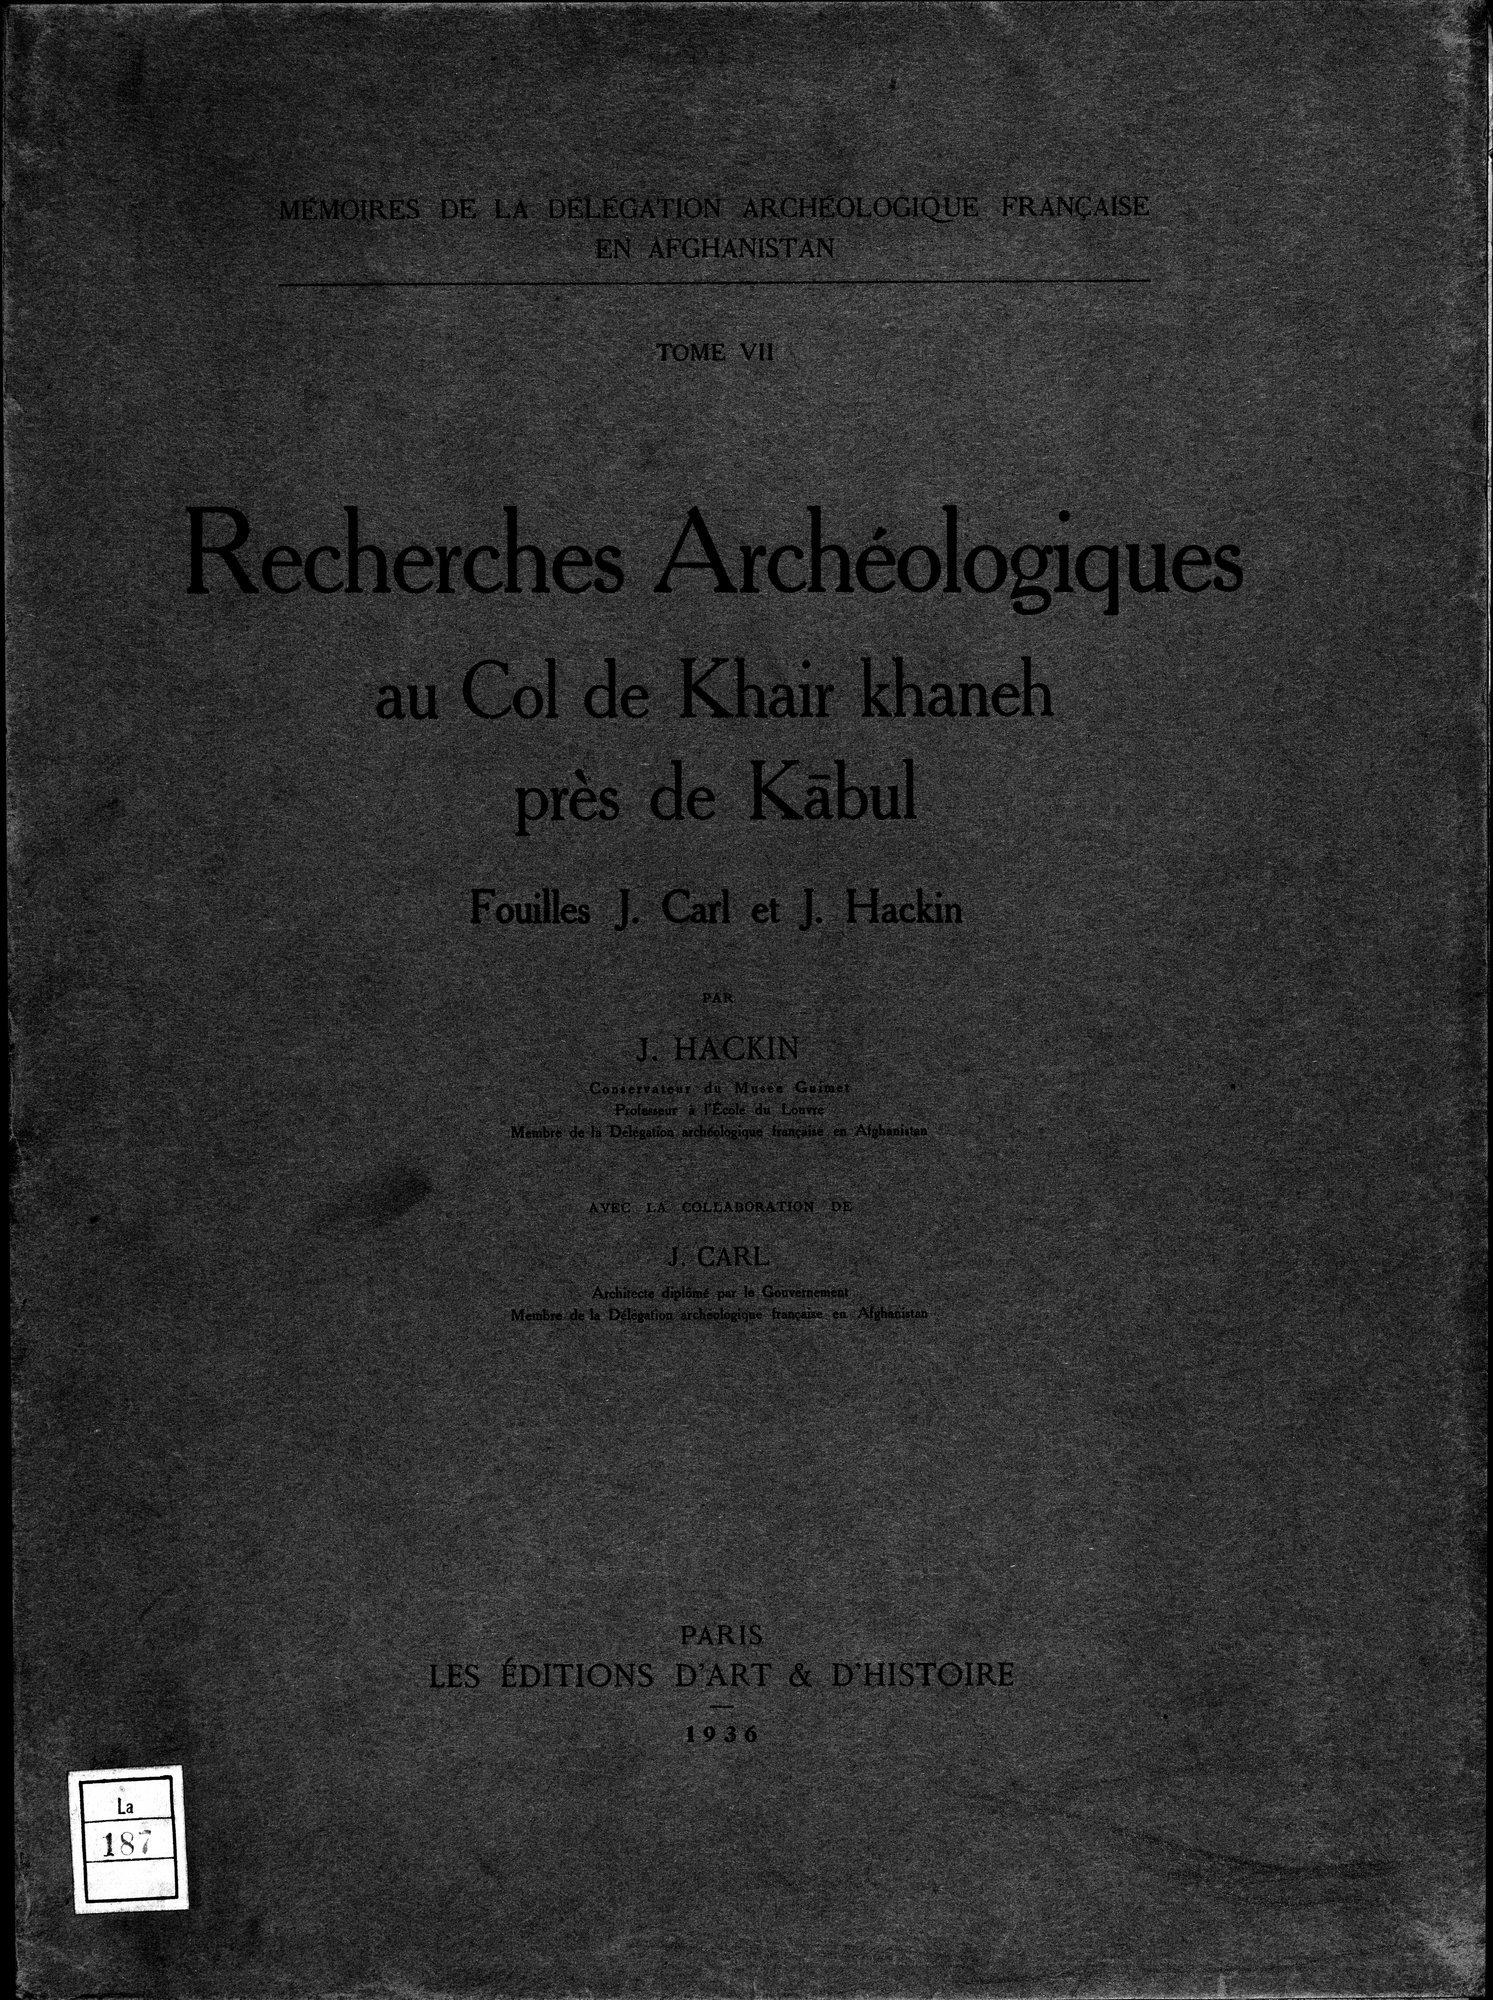 Recherches Archéologiques au Col de Khair khaneh près de Kābul : vol.1 / Page 1 (Grayscale High Resolution Image)